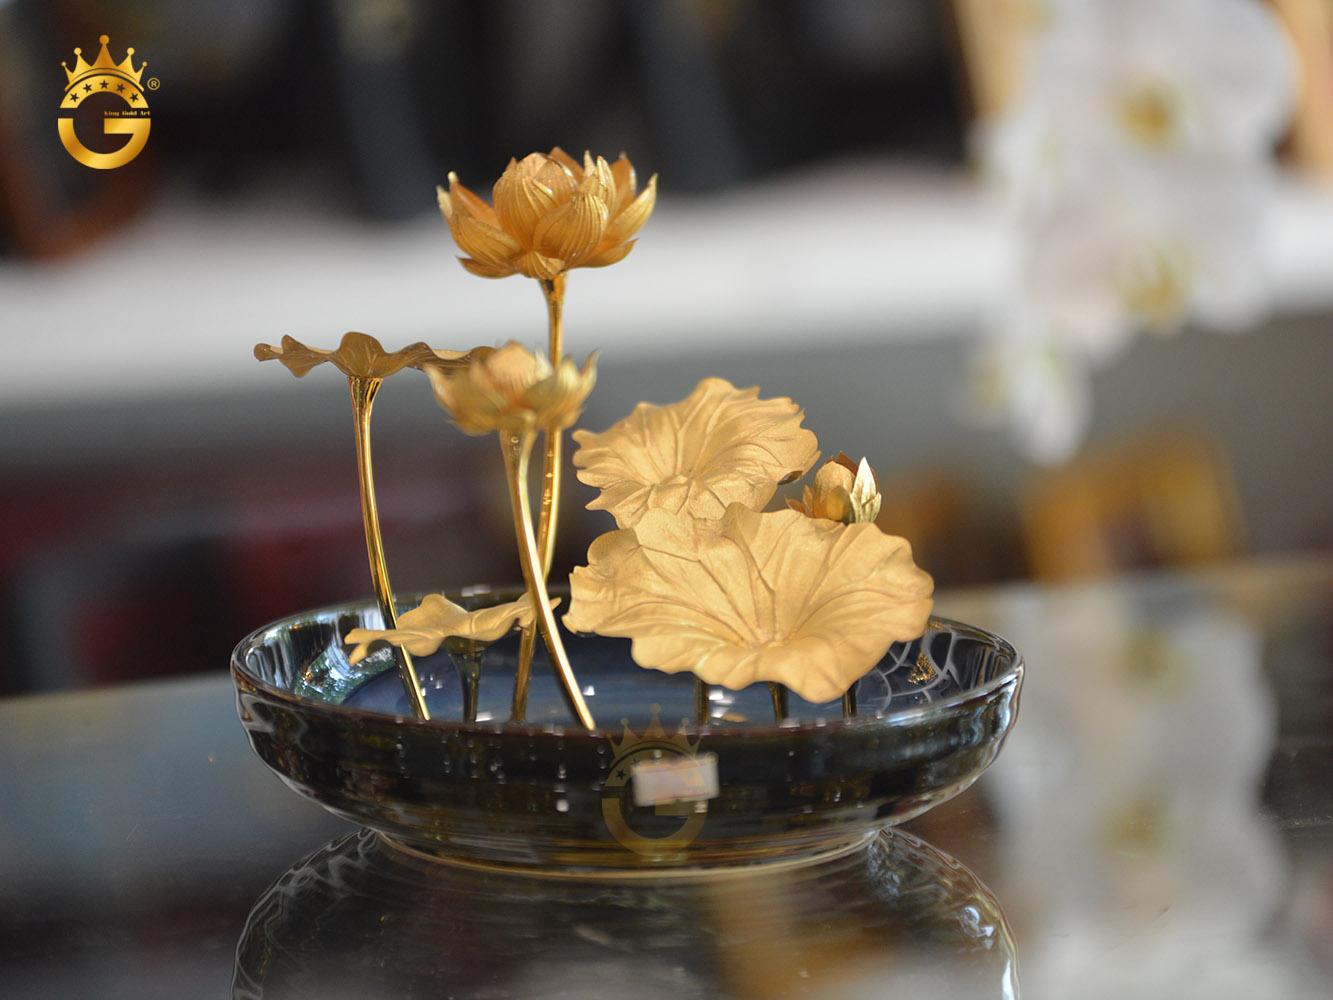 Biểu trưng chậu hoa sen tuyệt đẹp tại King Gold số 121 Cách mạng tháng 8, Ninh Kiều, Cần Thơ